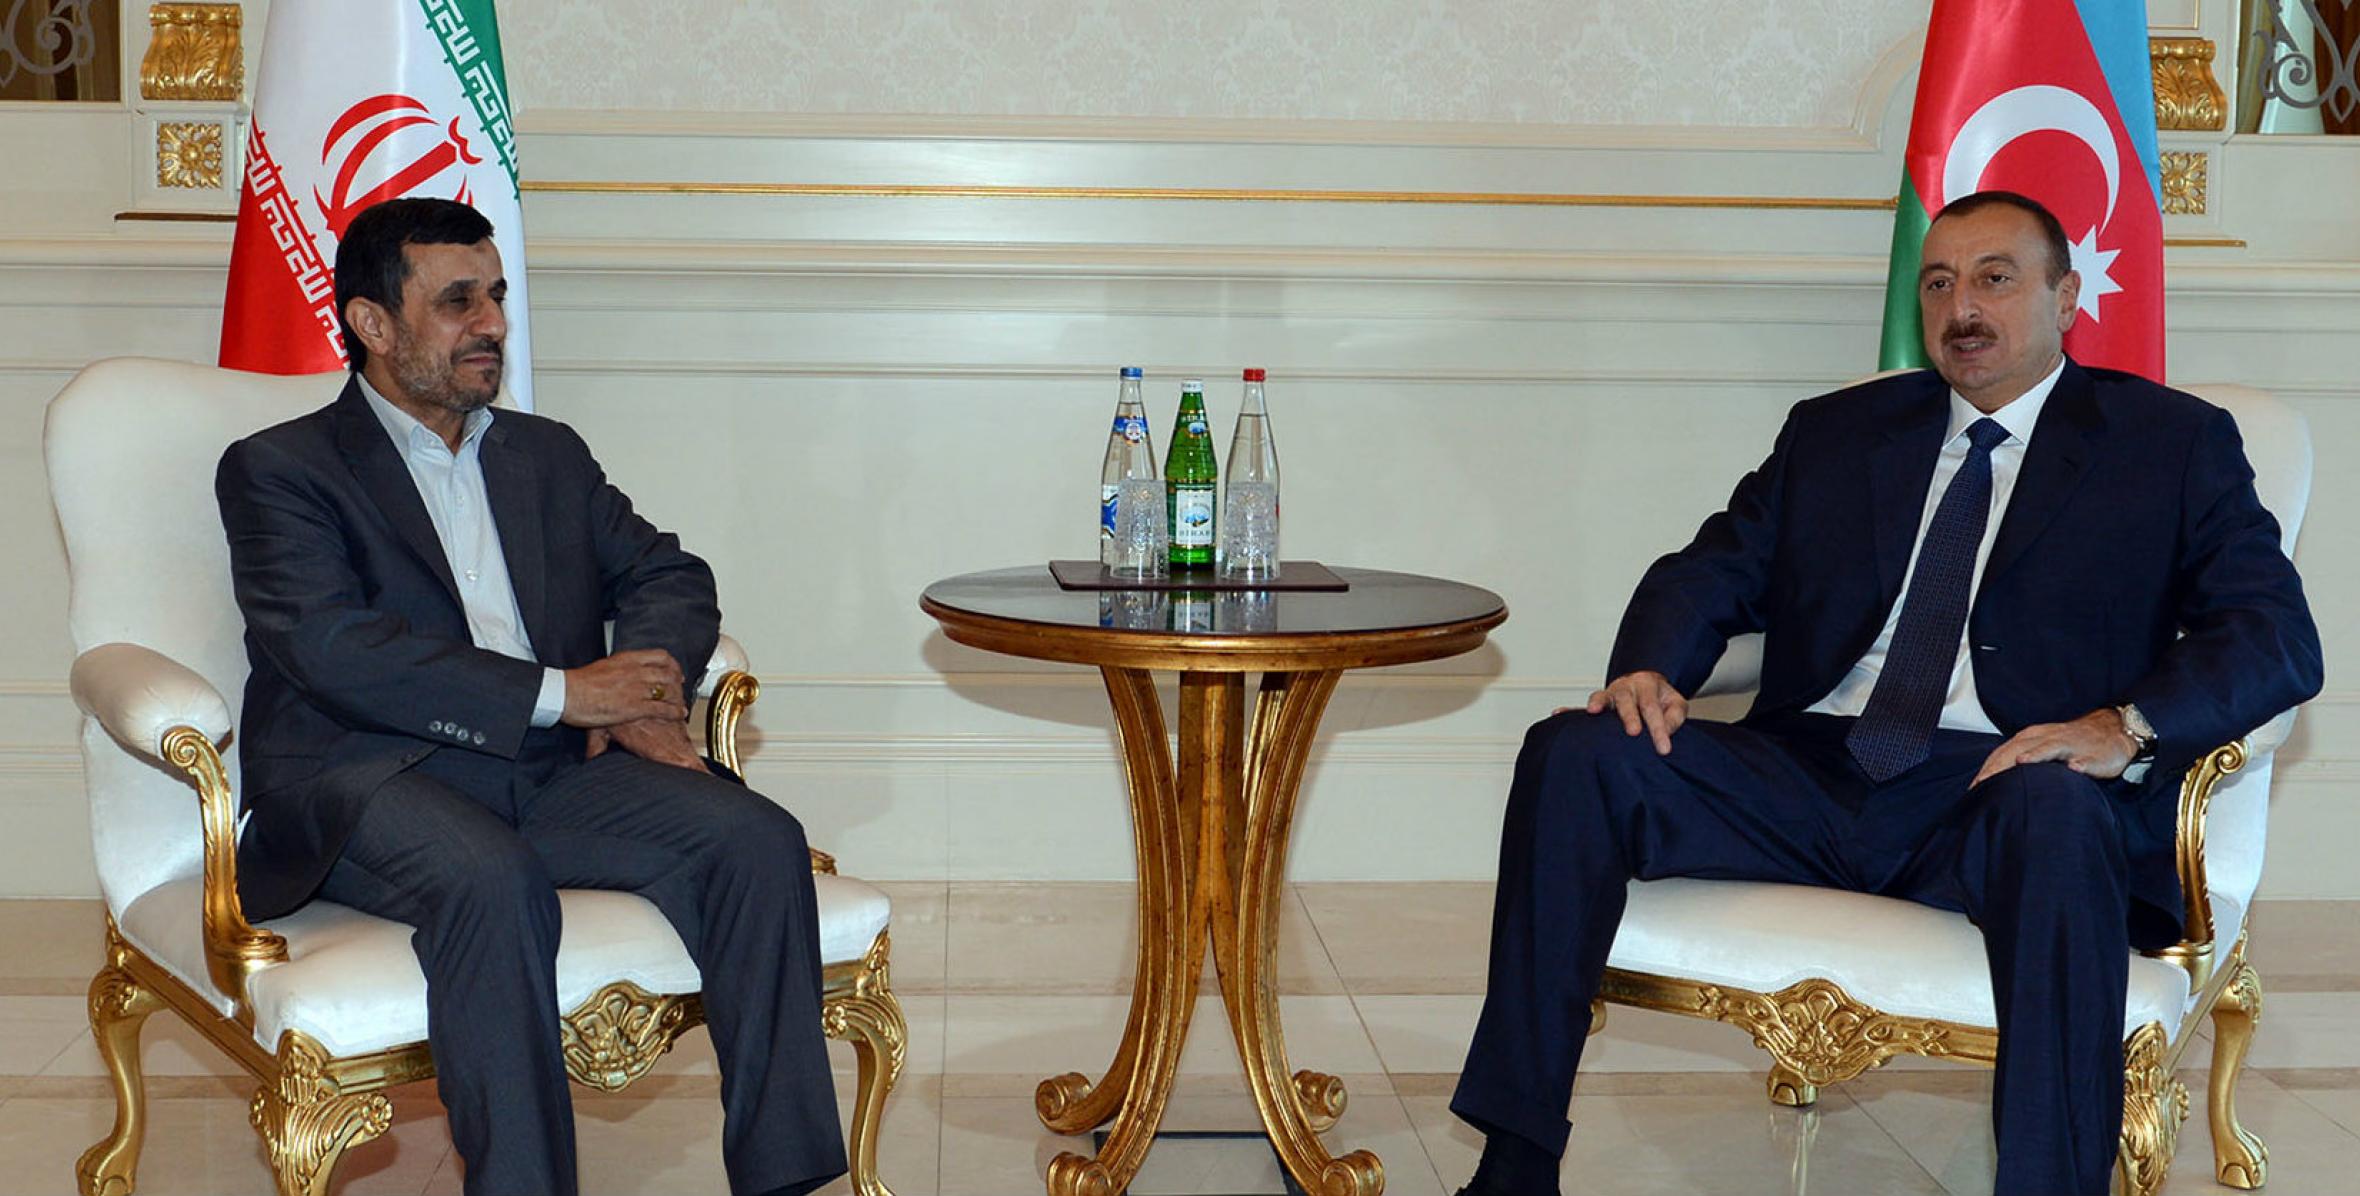 İlham Əliyev İran Prezidenti Mahmud Əhmədinejad ilə görüşmüşdür